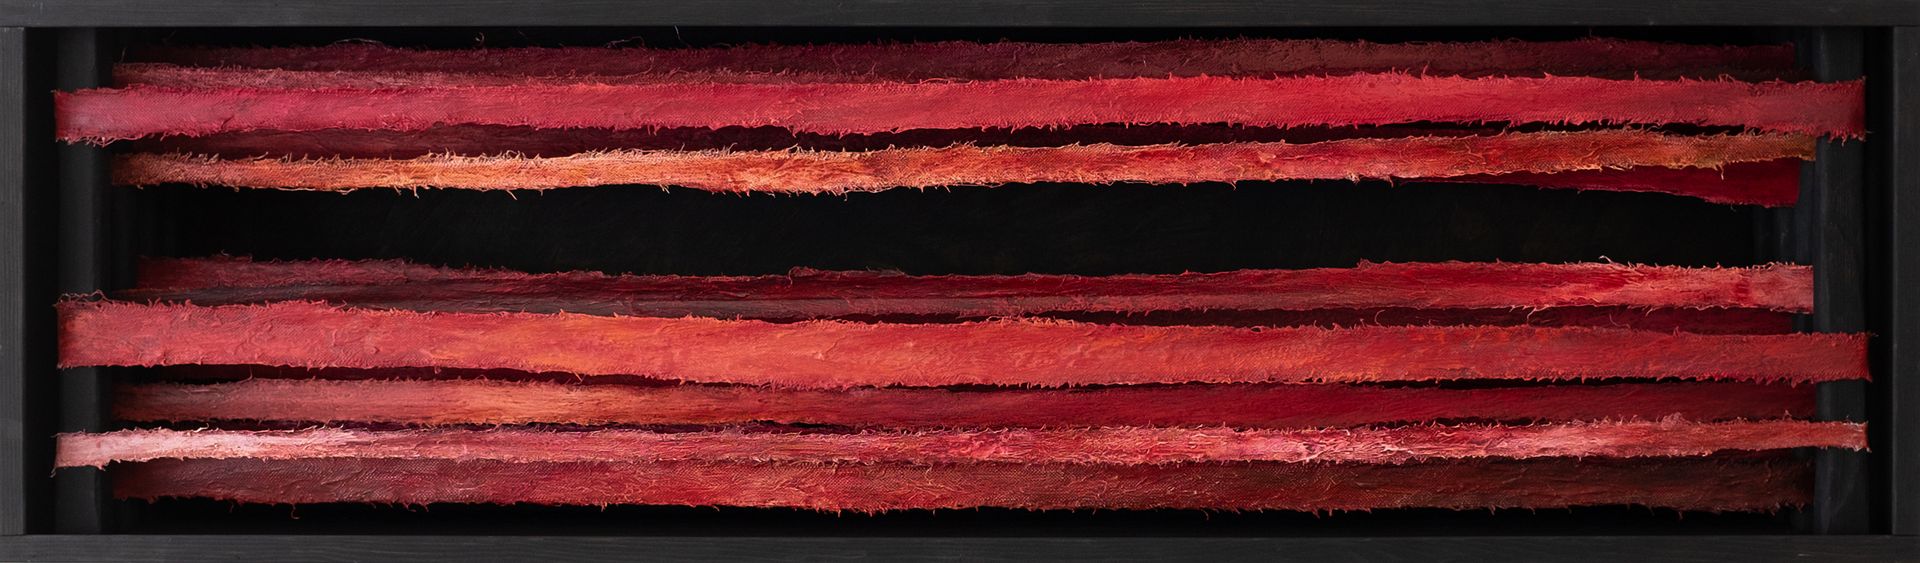 Константин Байдаков (Объект - 
                  54 x 186 см) Линии горизонта. Красные